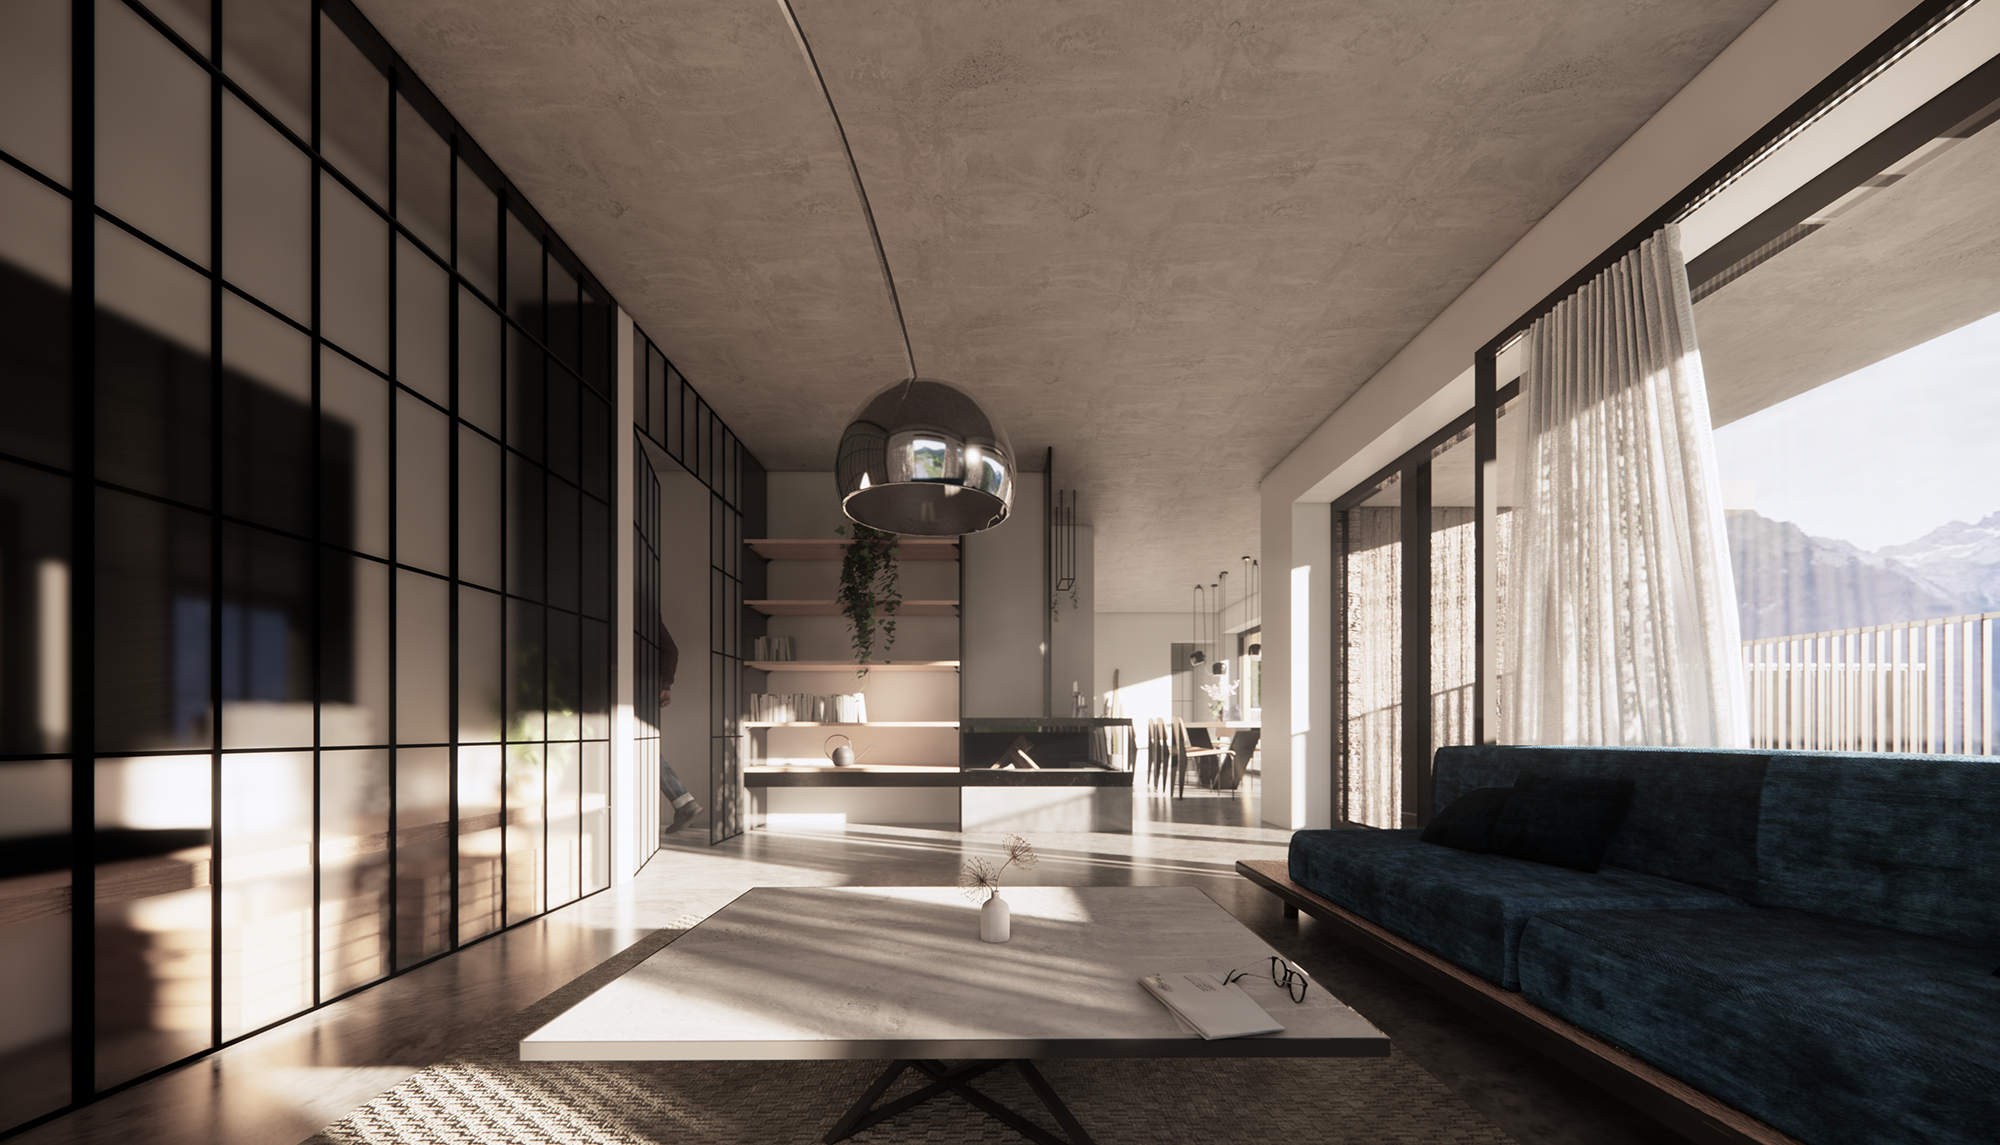 Apartment Design | Wohnbereich industriell und minimalistisch | SNOW ARCHITEKTUR